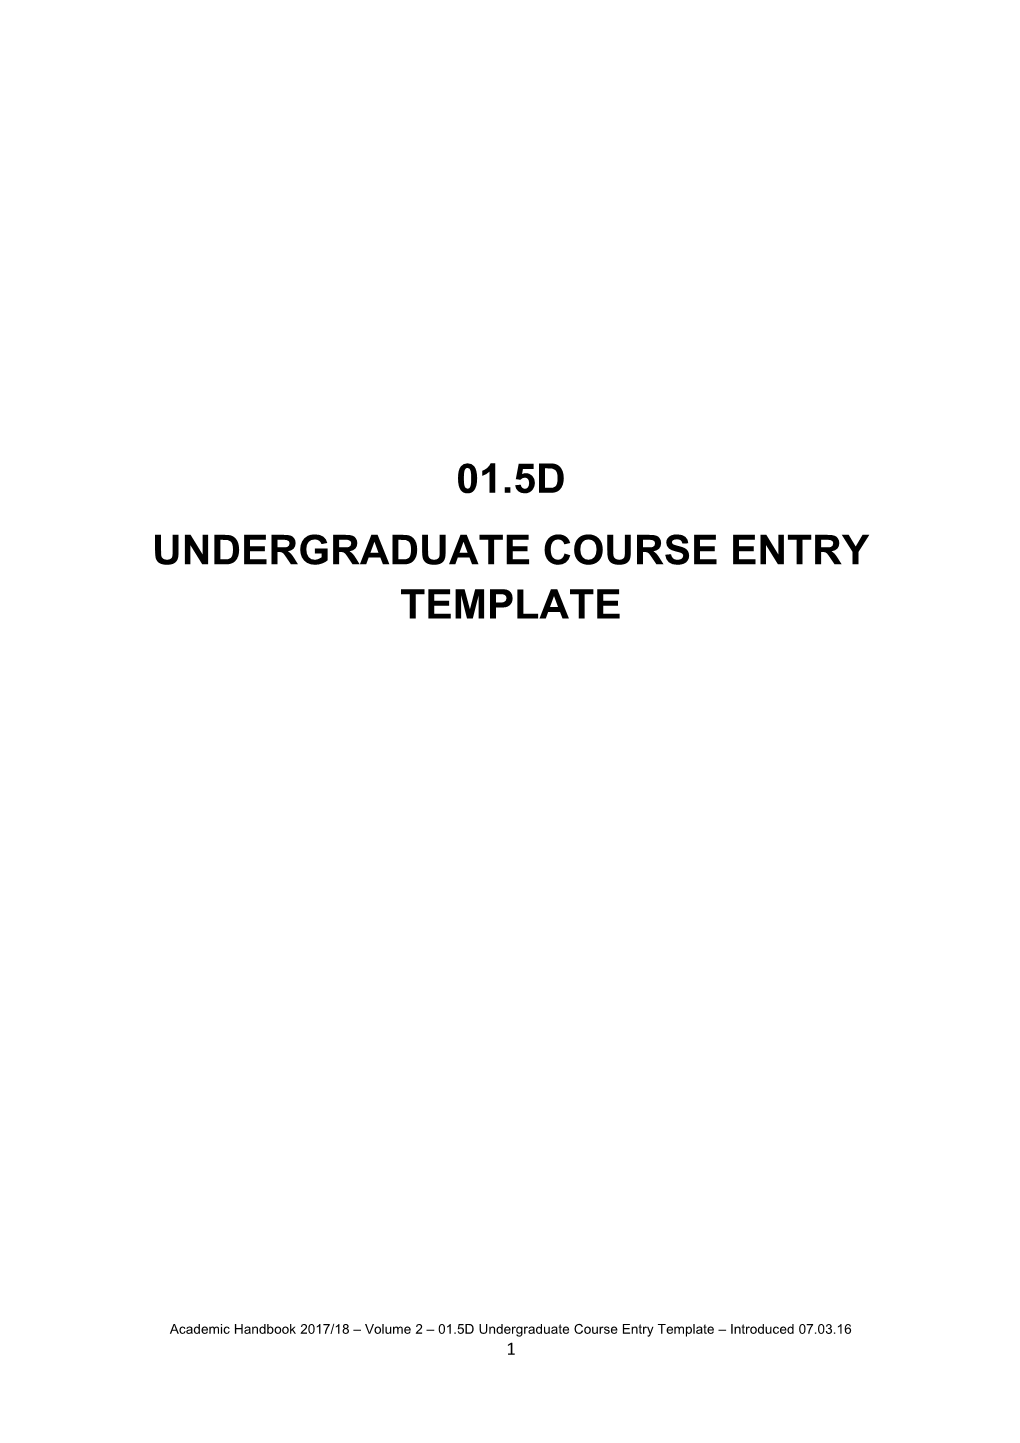 Undergraduate Course Entry Template